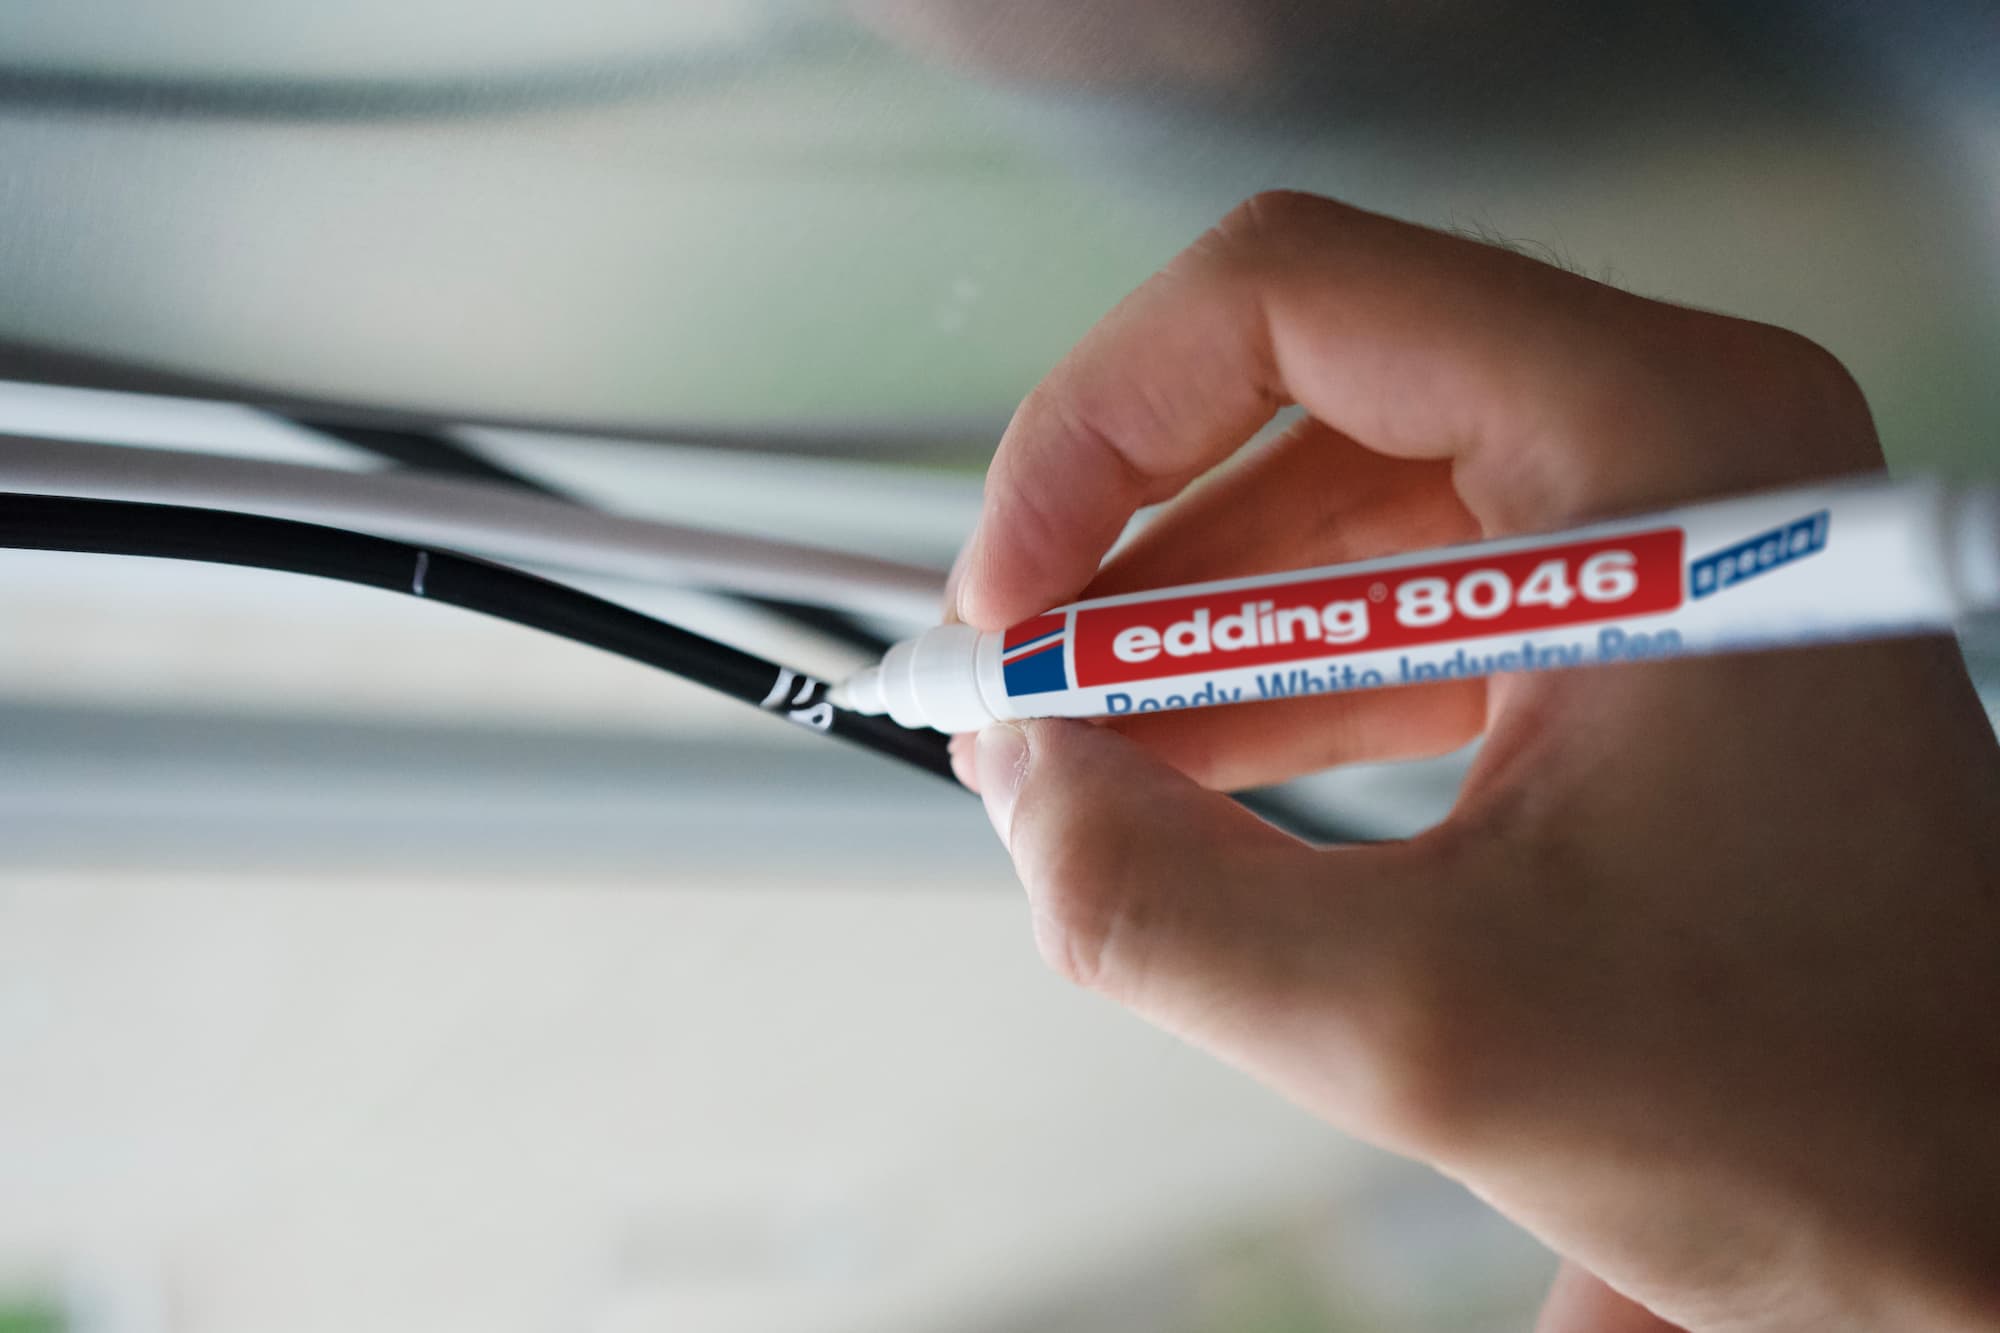 Ein edding 8046 Ready weißer Industriestift mit blauen und roten Details und schnelltrocknender Tinte, diagonal vor einem transparenten Hintergrund positioniert.